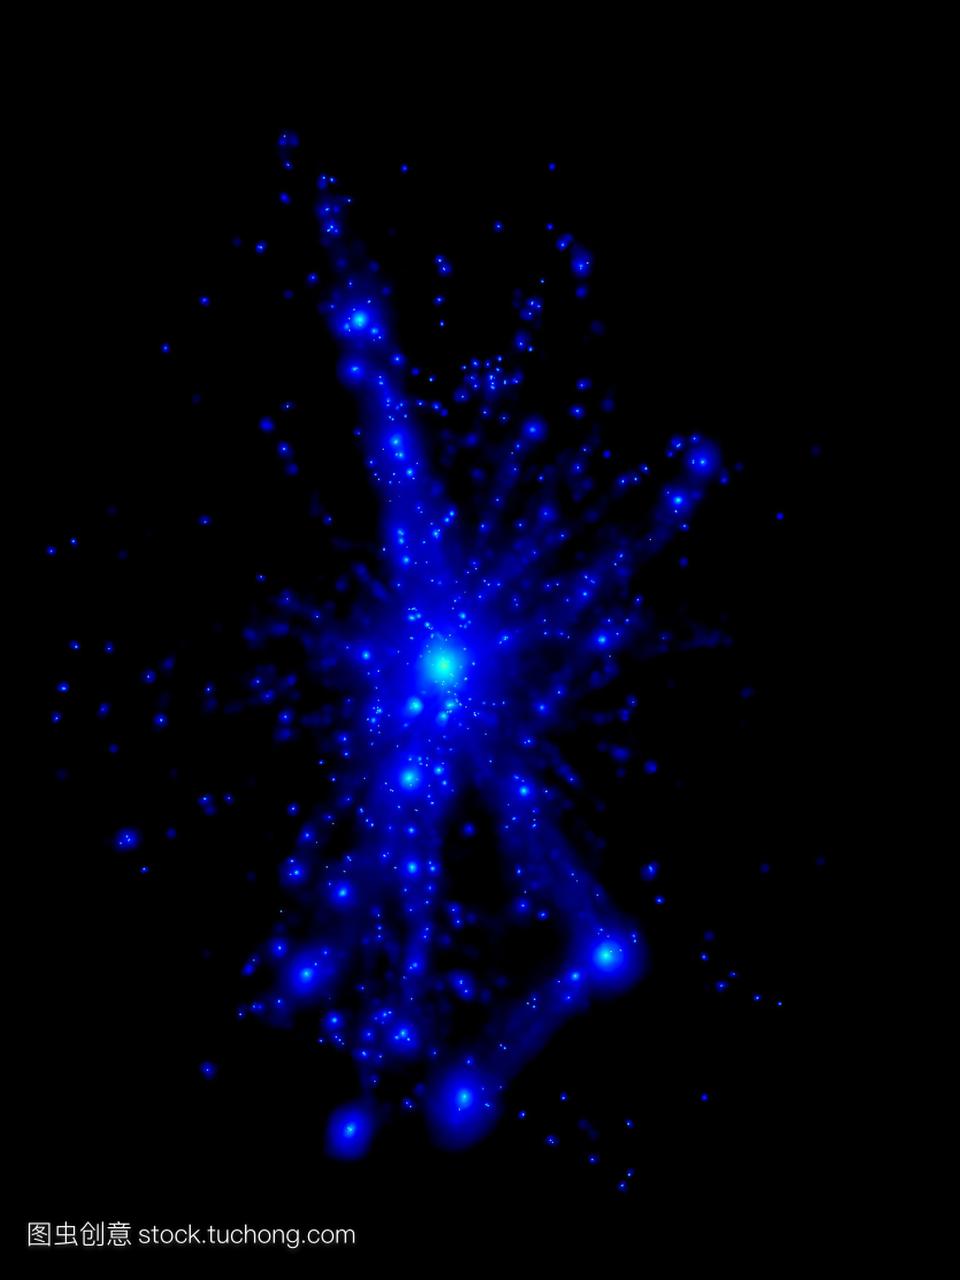 星系团超级计算机模拟。星系白点被引力束缚在